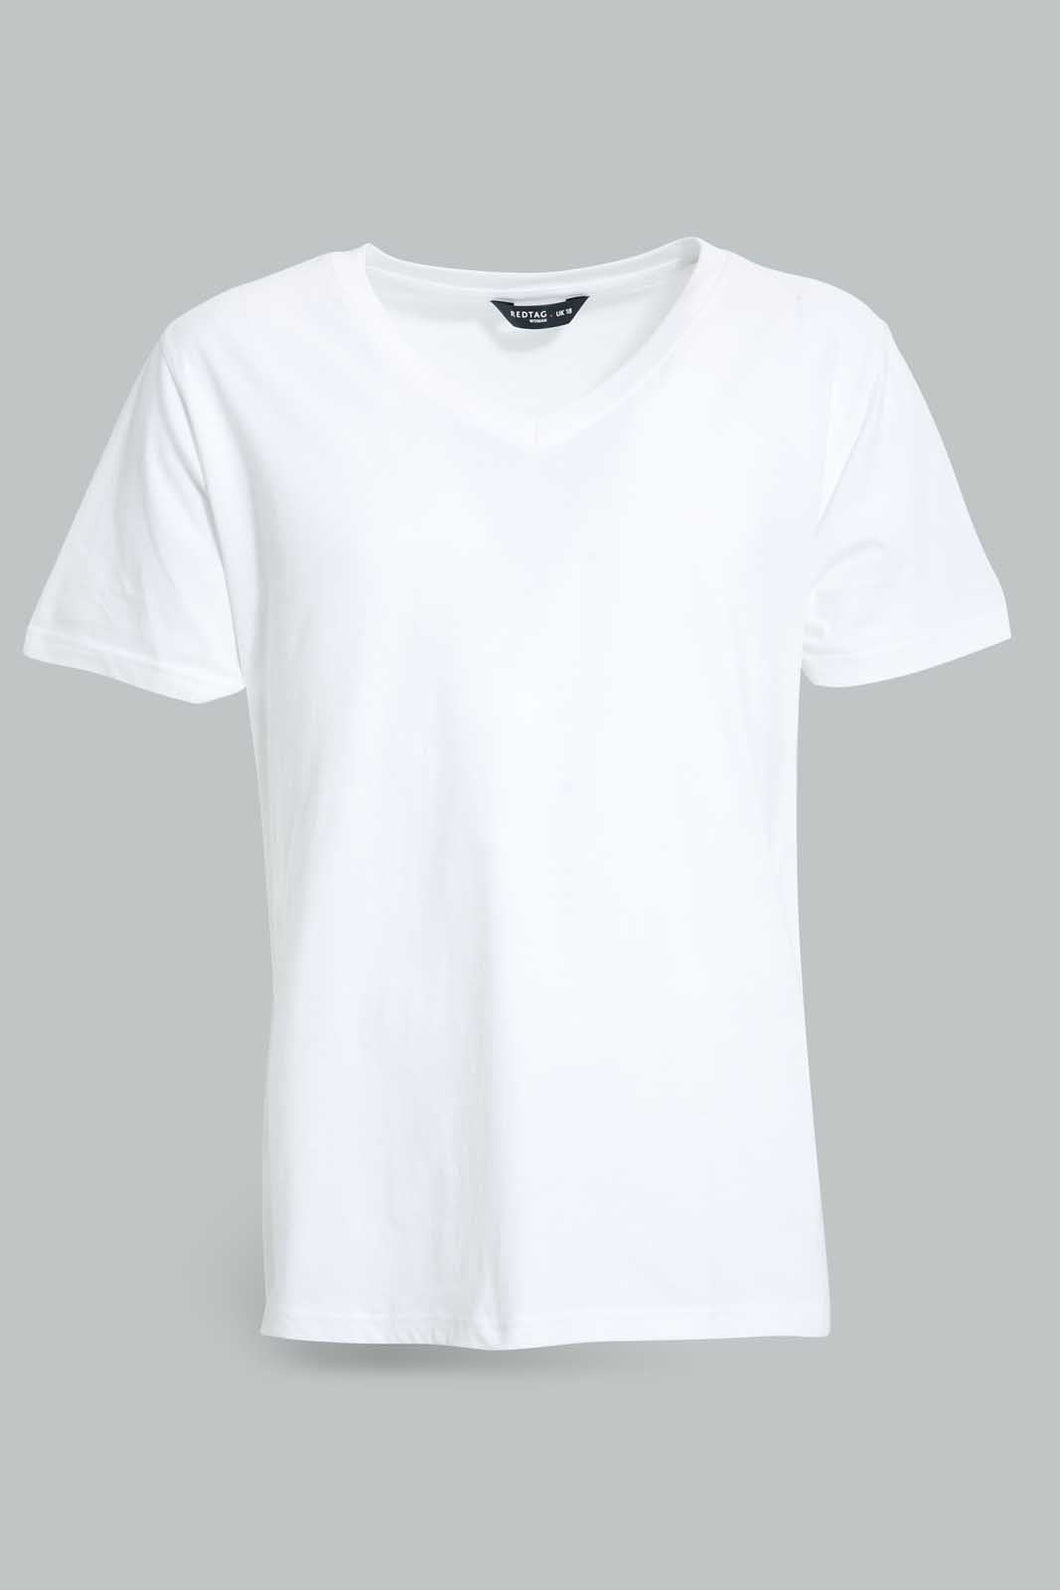 White V-Neck T-Shirt For Women تيشيرت باللون الأبيض للنساء